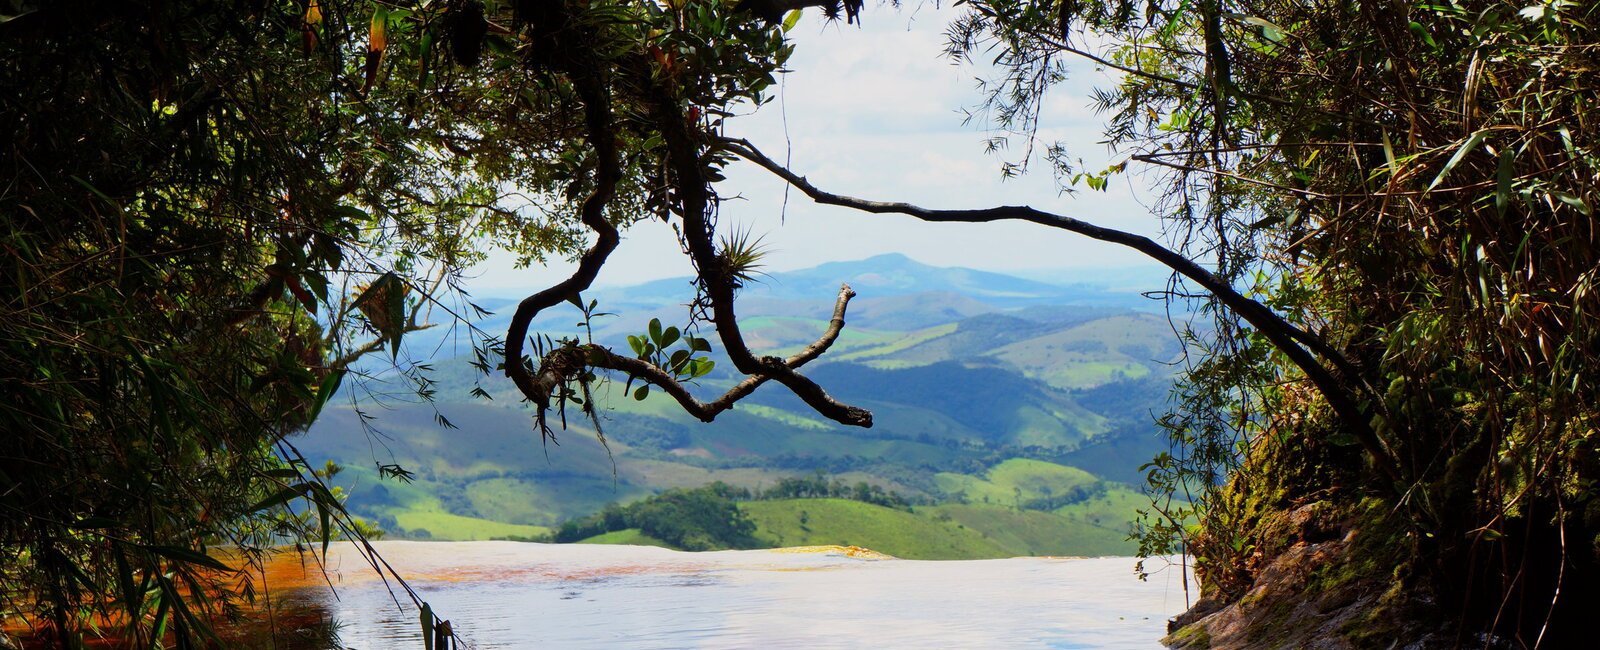 Conheça Ibitipoca, um paraíso verde em Minas Gerais